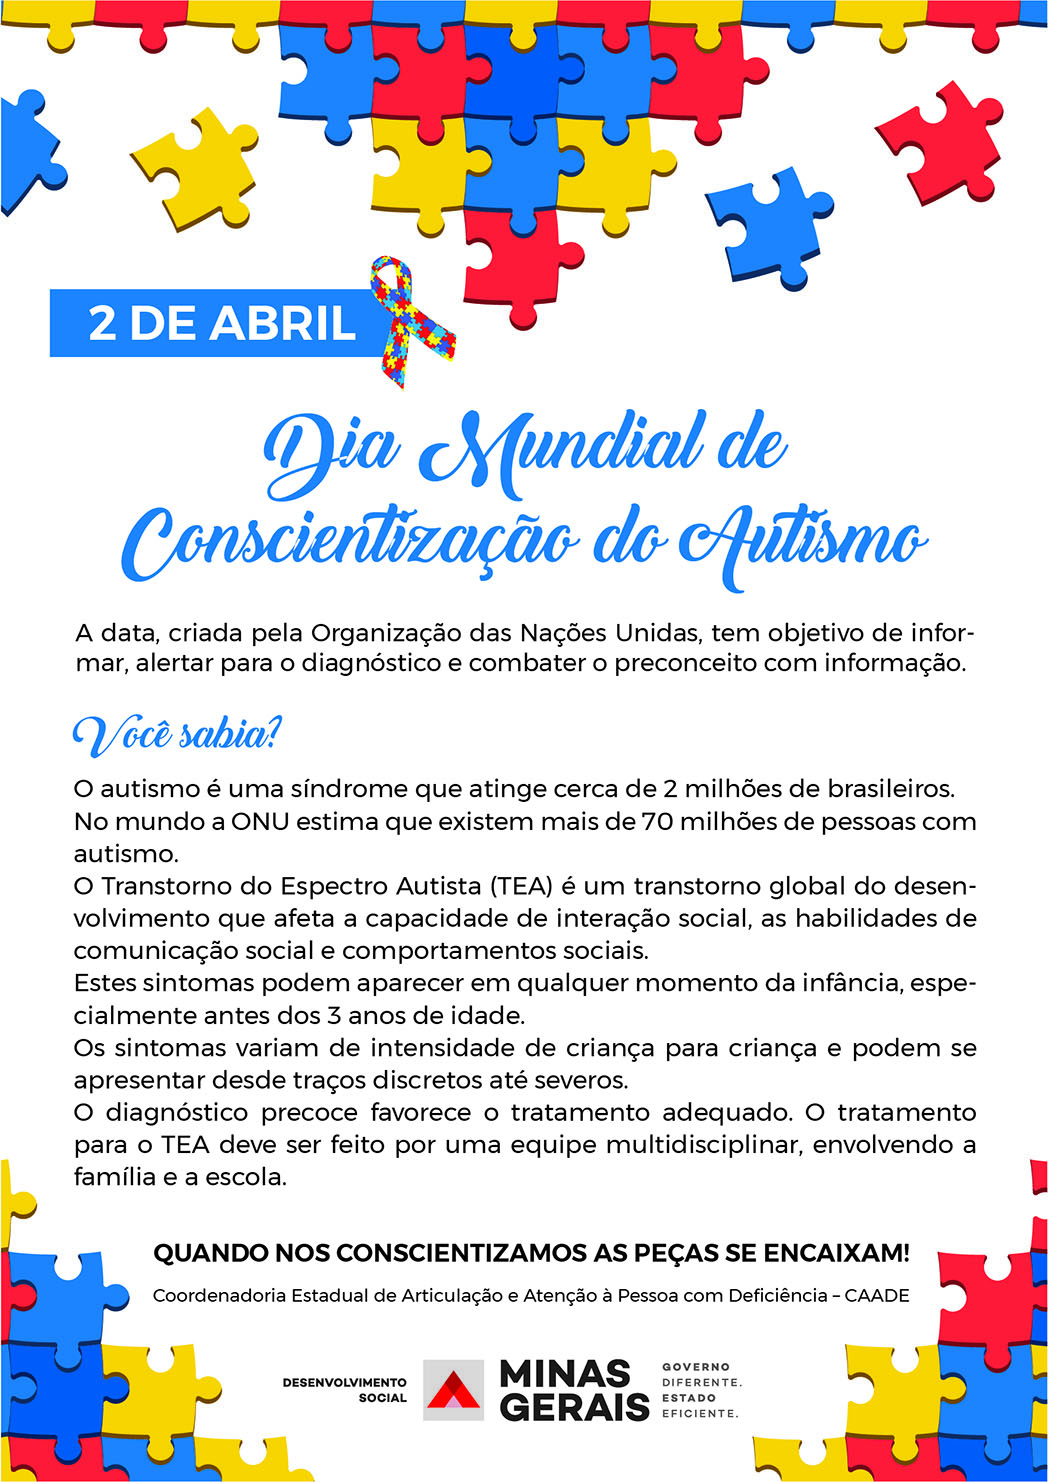 2 de Abril Dia Mundial do Autismo materia